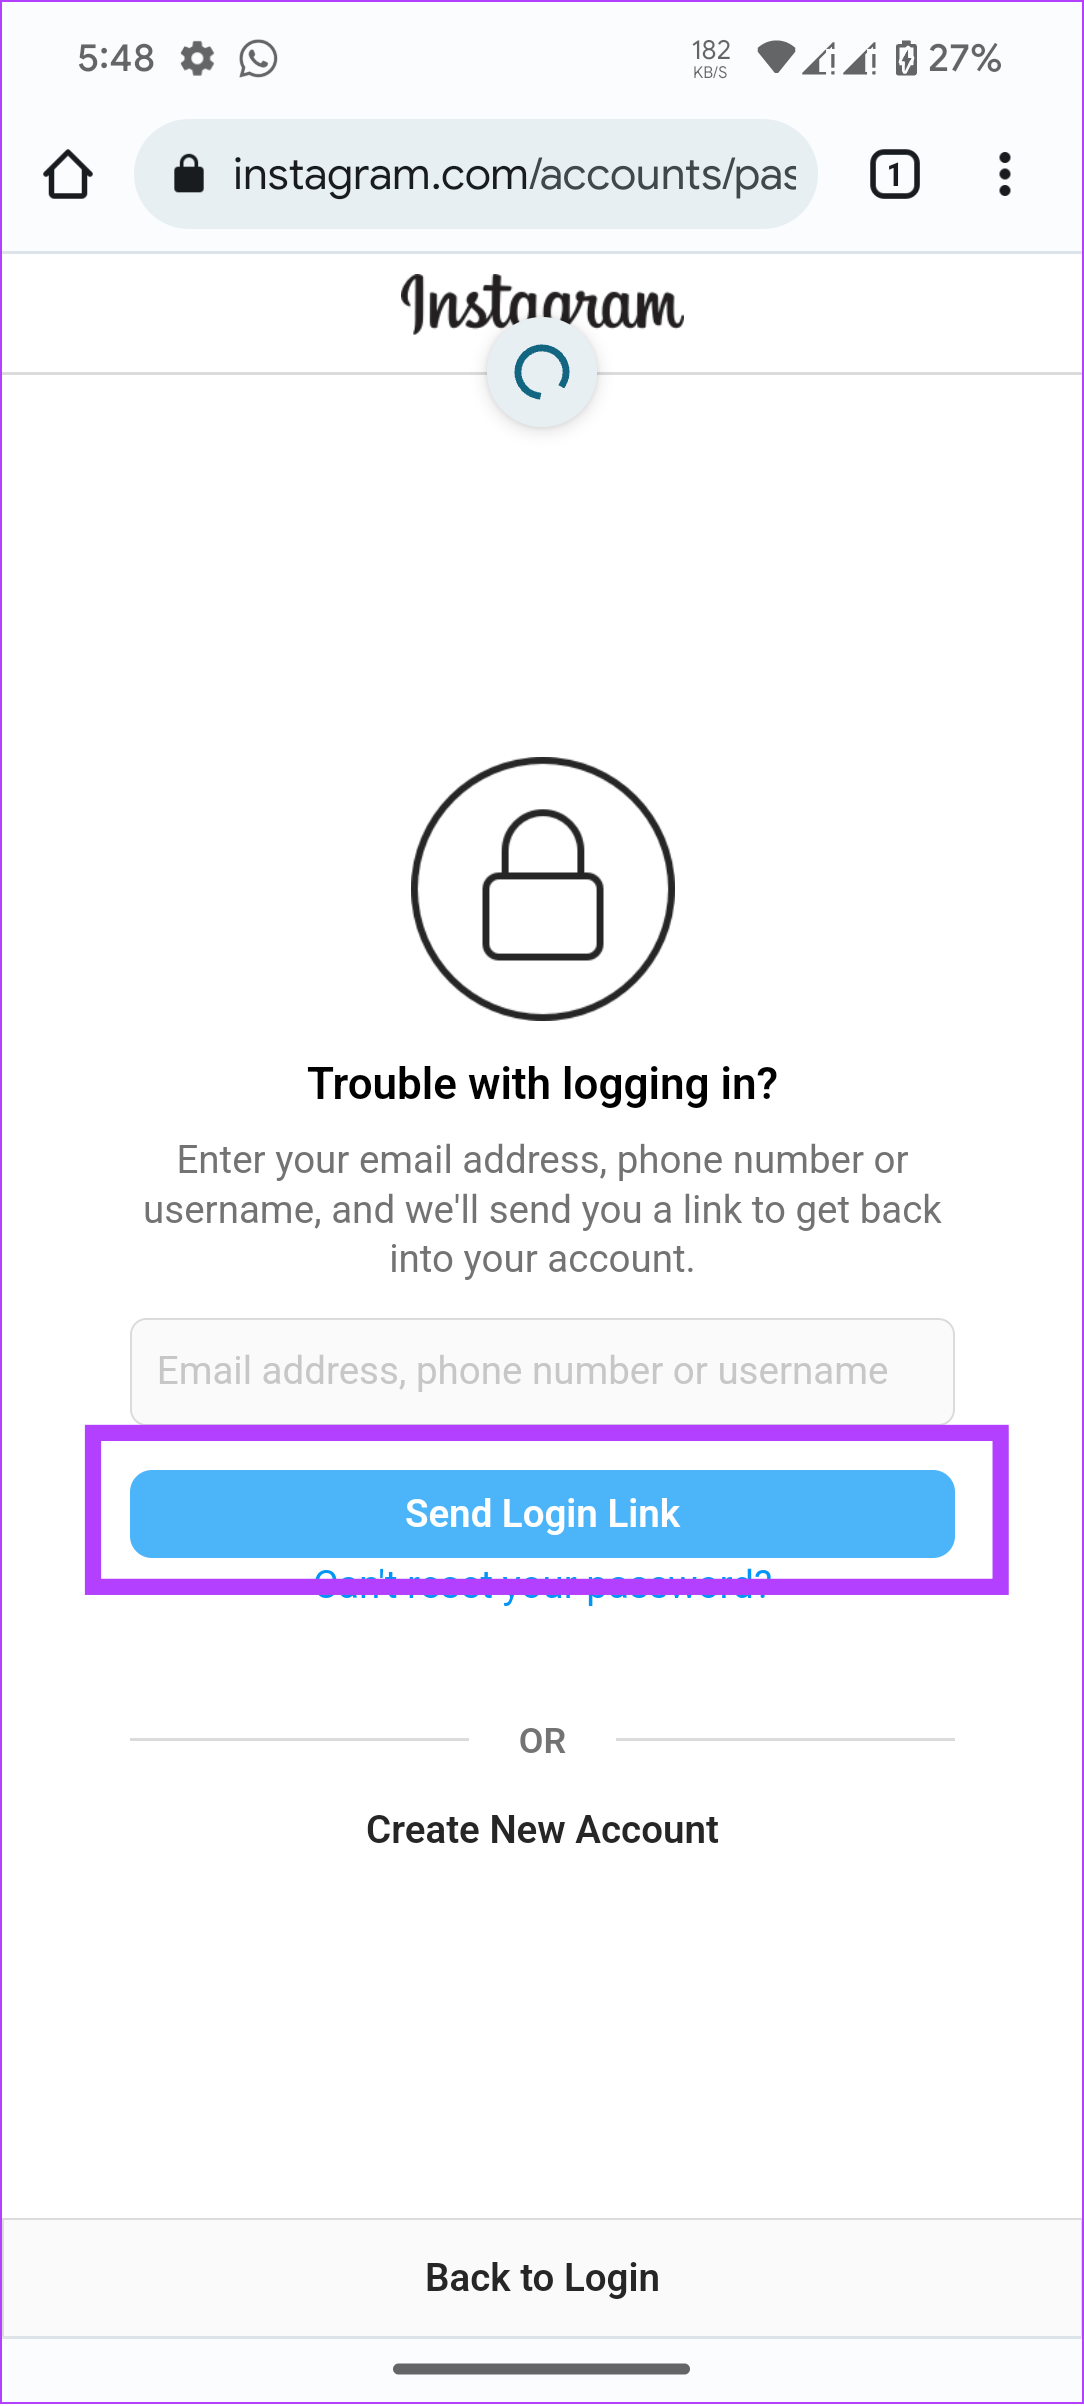 tap send login link